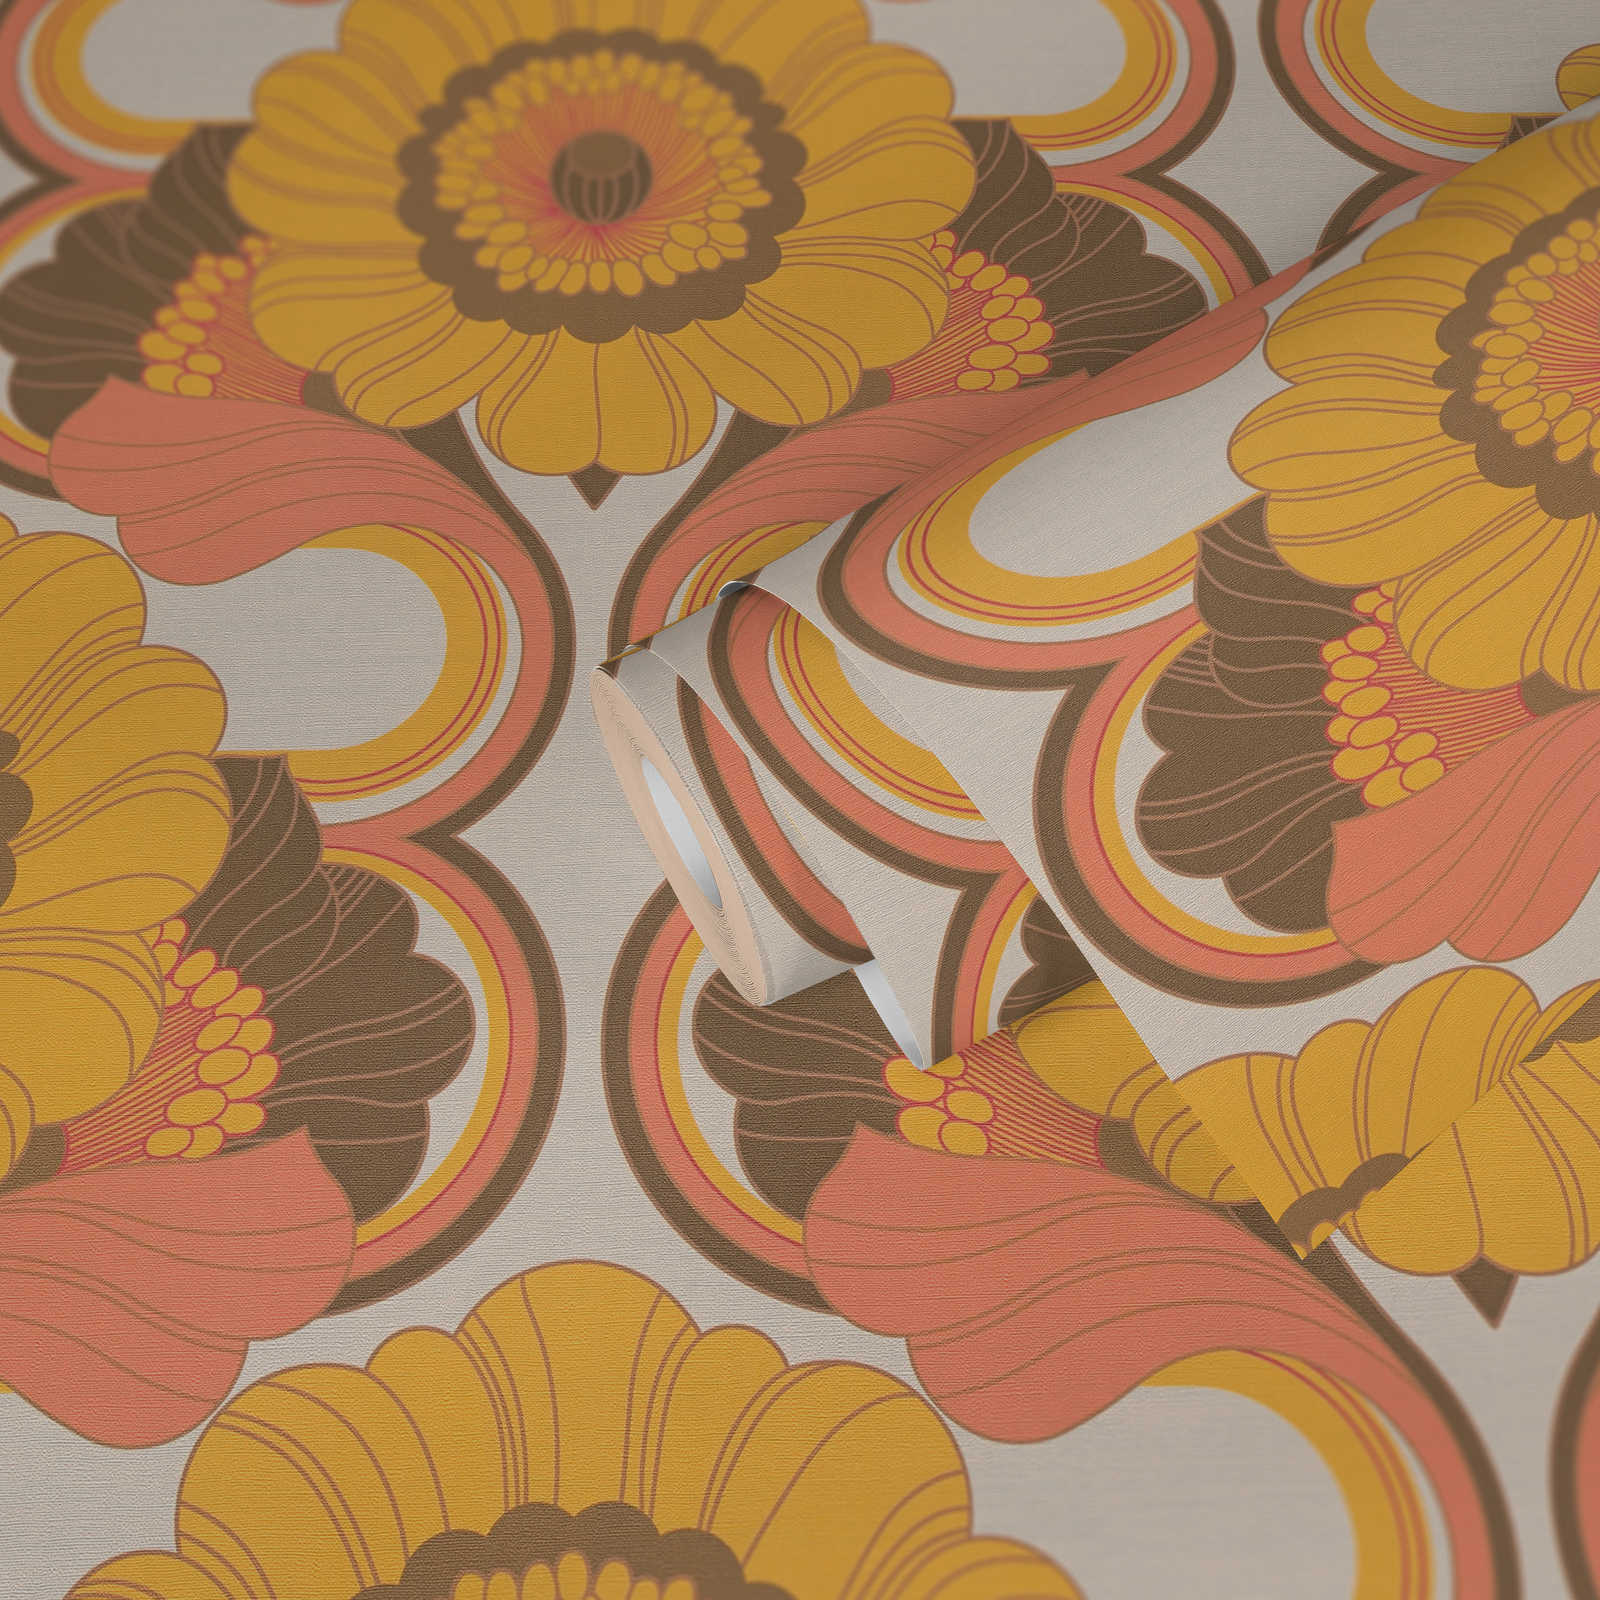             Floraal retro behang met bloemenpatroon in warme kleuren - bruin, geel, oranje
        